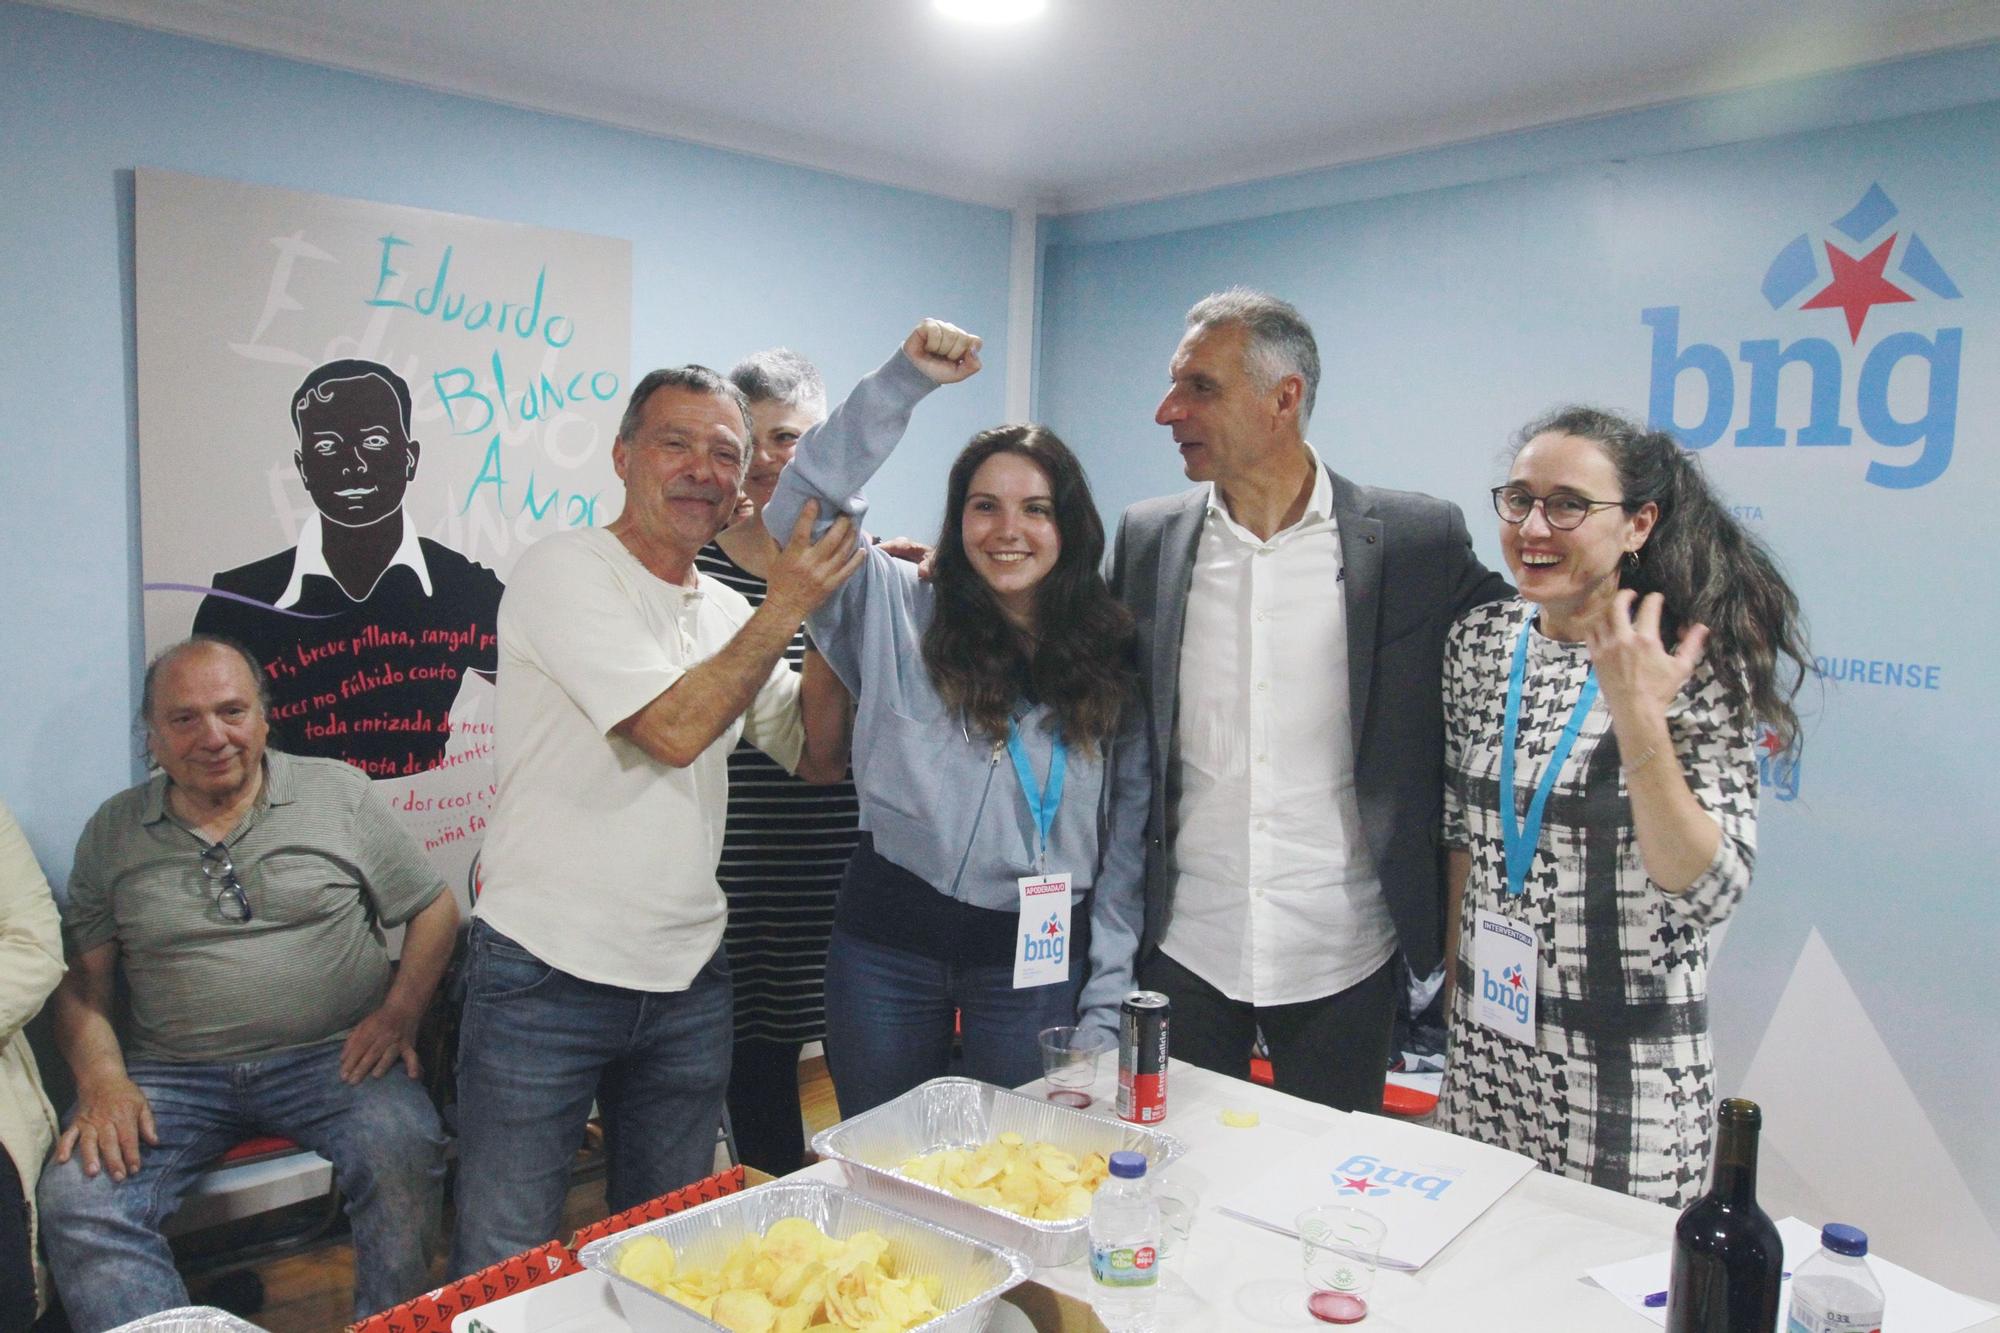 Las mejores imágenes de la jornada electoral en Ourense